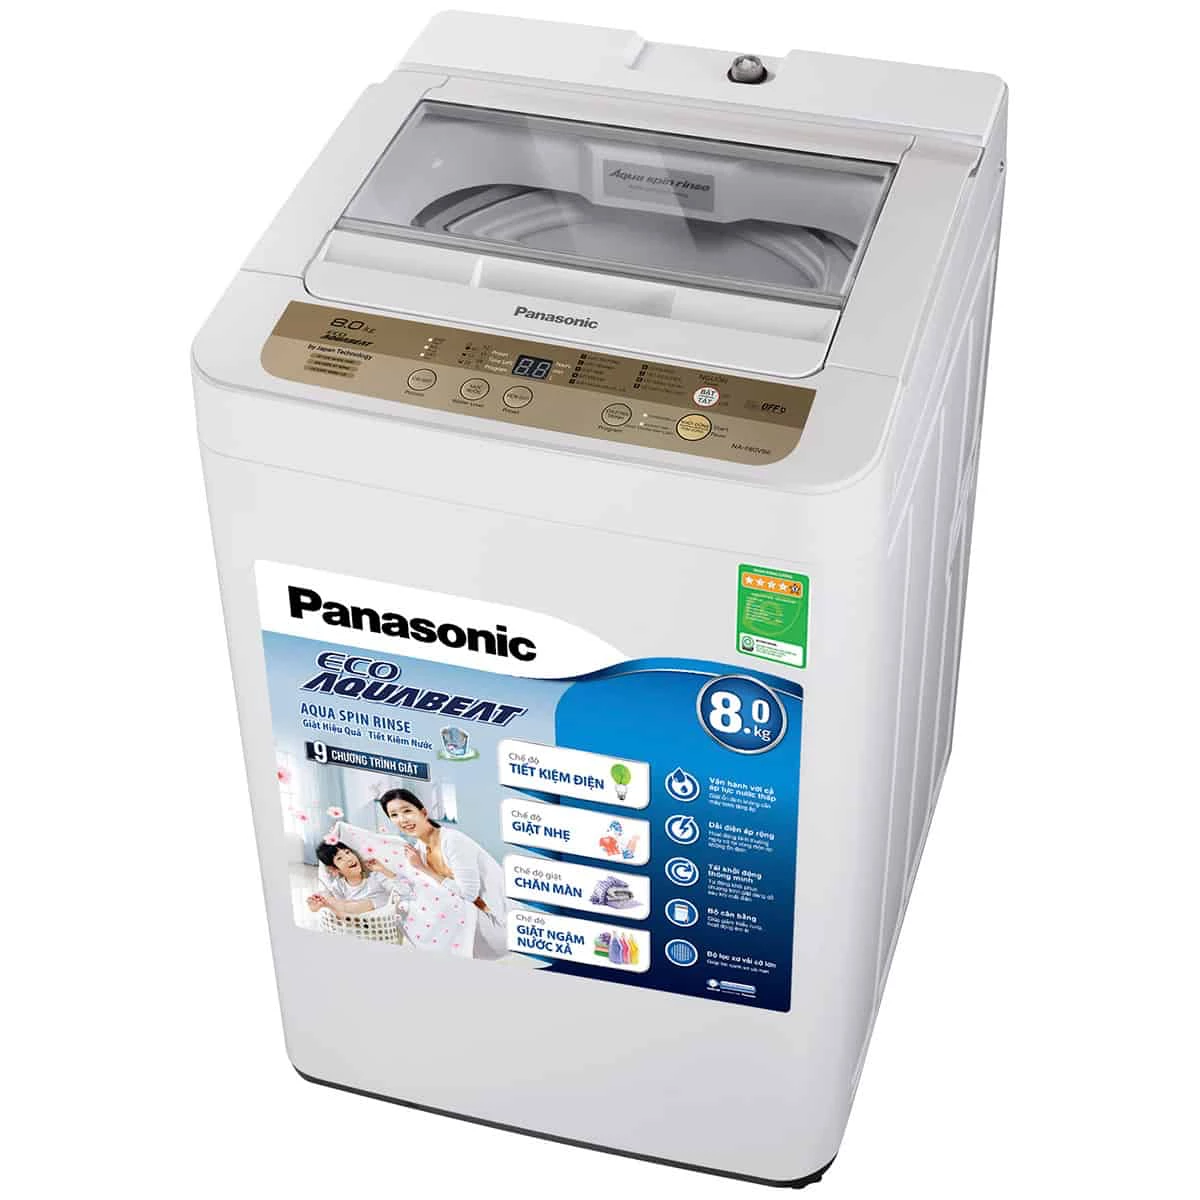 Sử dụng máy giặt Panasonic